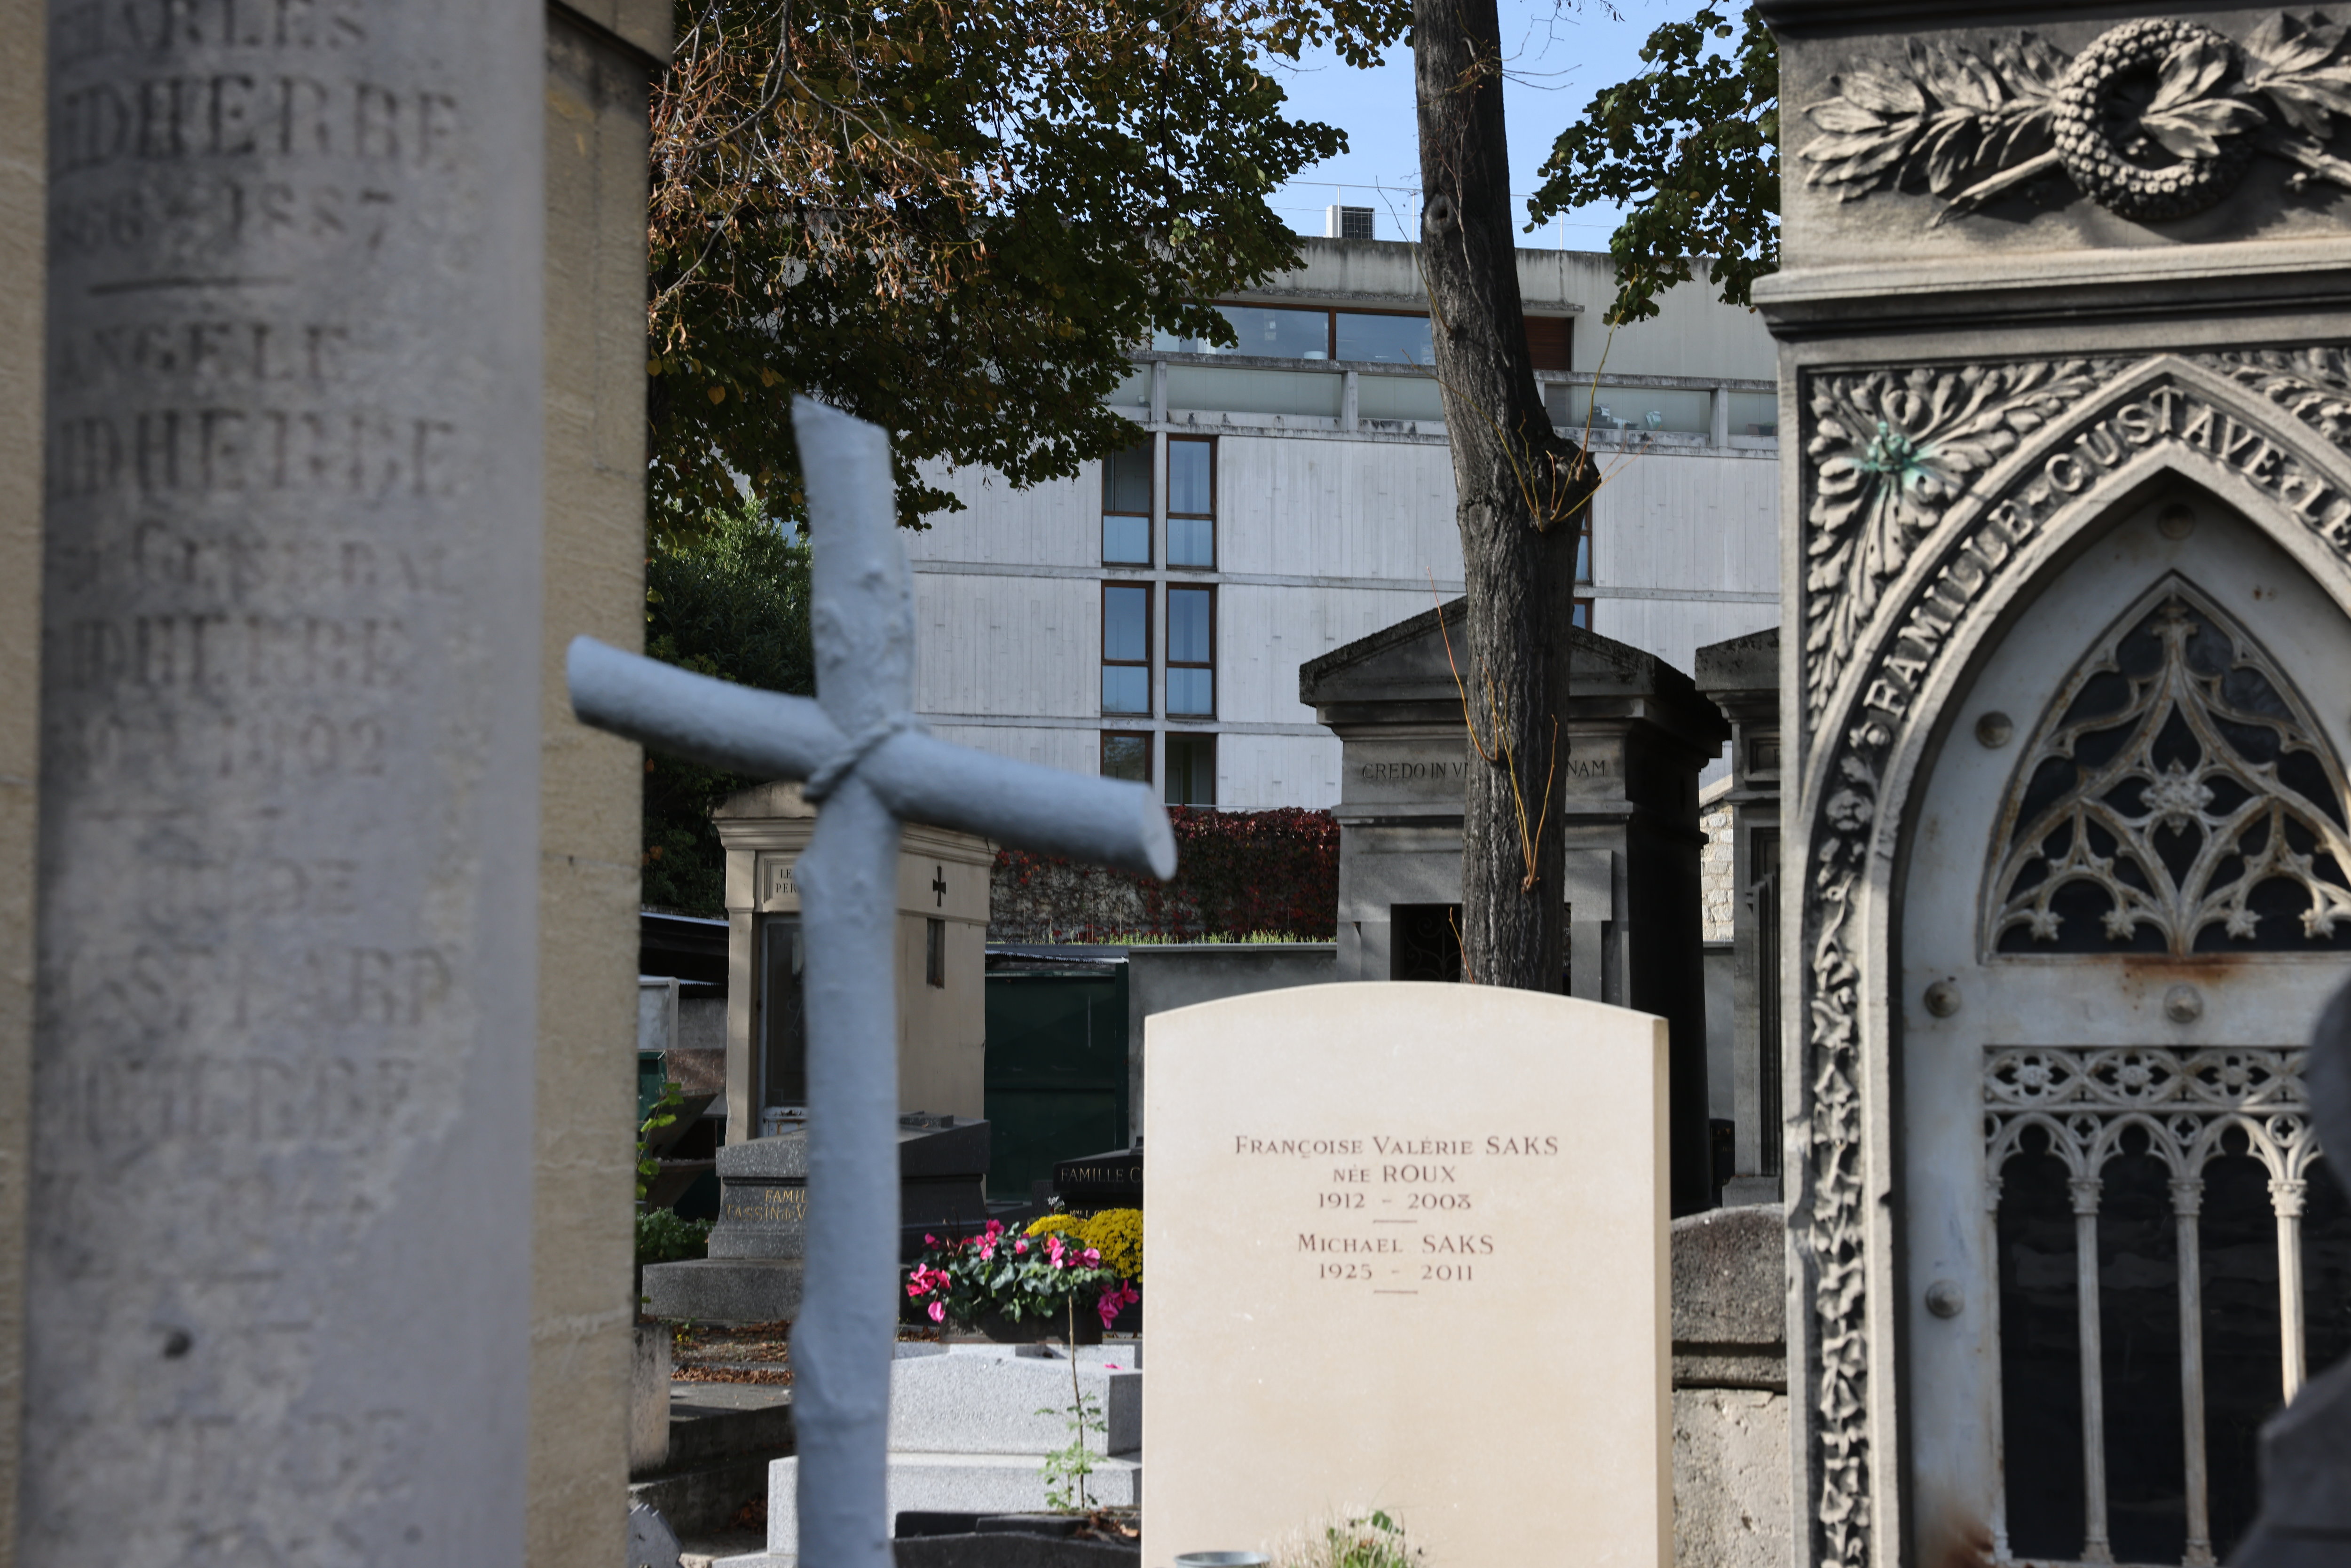 La CWGC gére 3 000 sites en France, dont 1 000 cimetières en propre et 2 000 carrés dans des cimetières communaux. (Illustration) LP/Olivier Lejeune